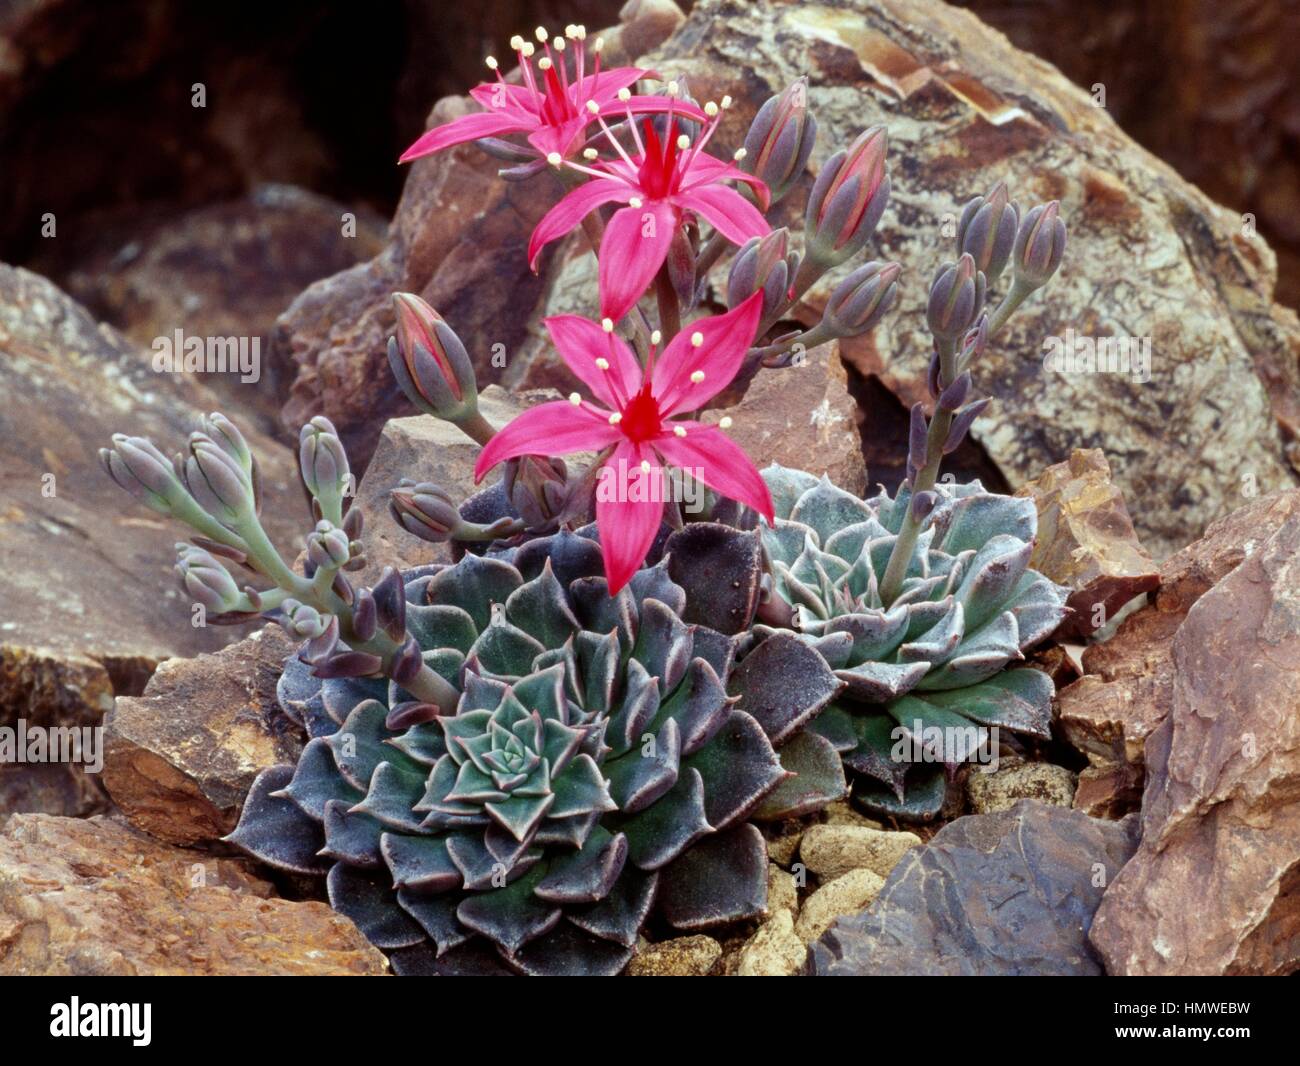 fioritura-graptopetalum-bellum-o-tacito-bellus-cactaceae-hmwebw.jpg